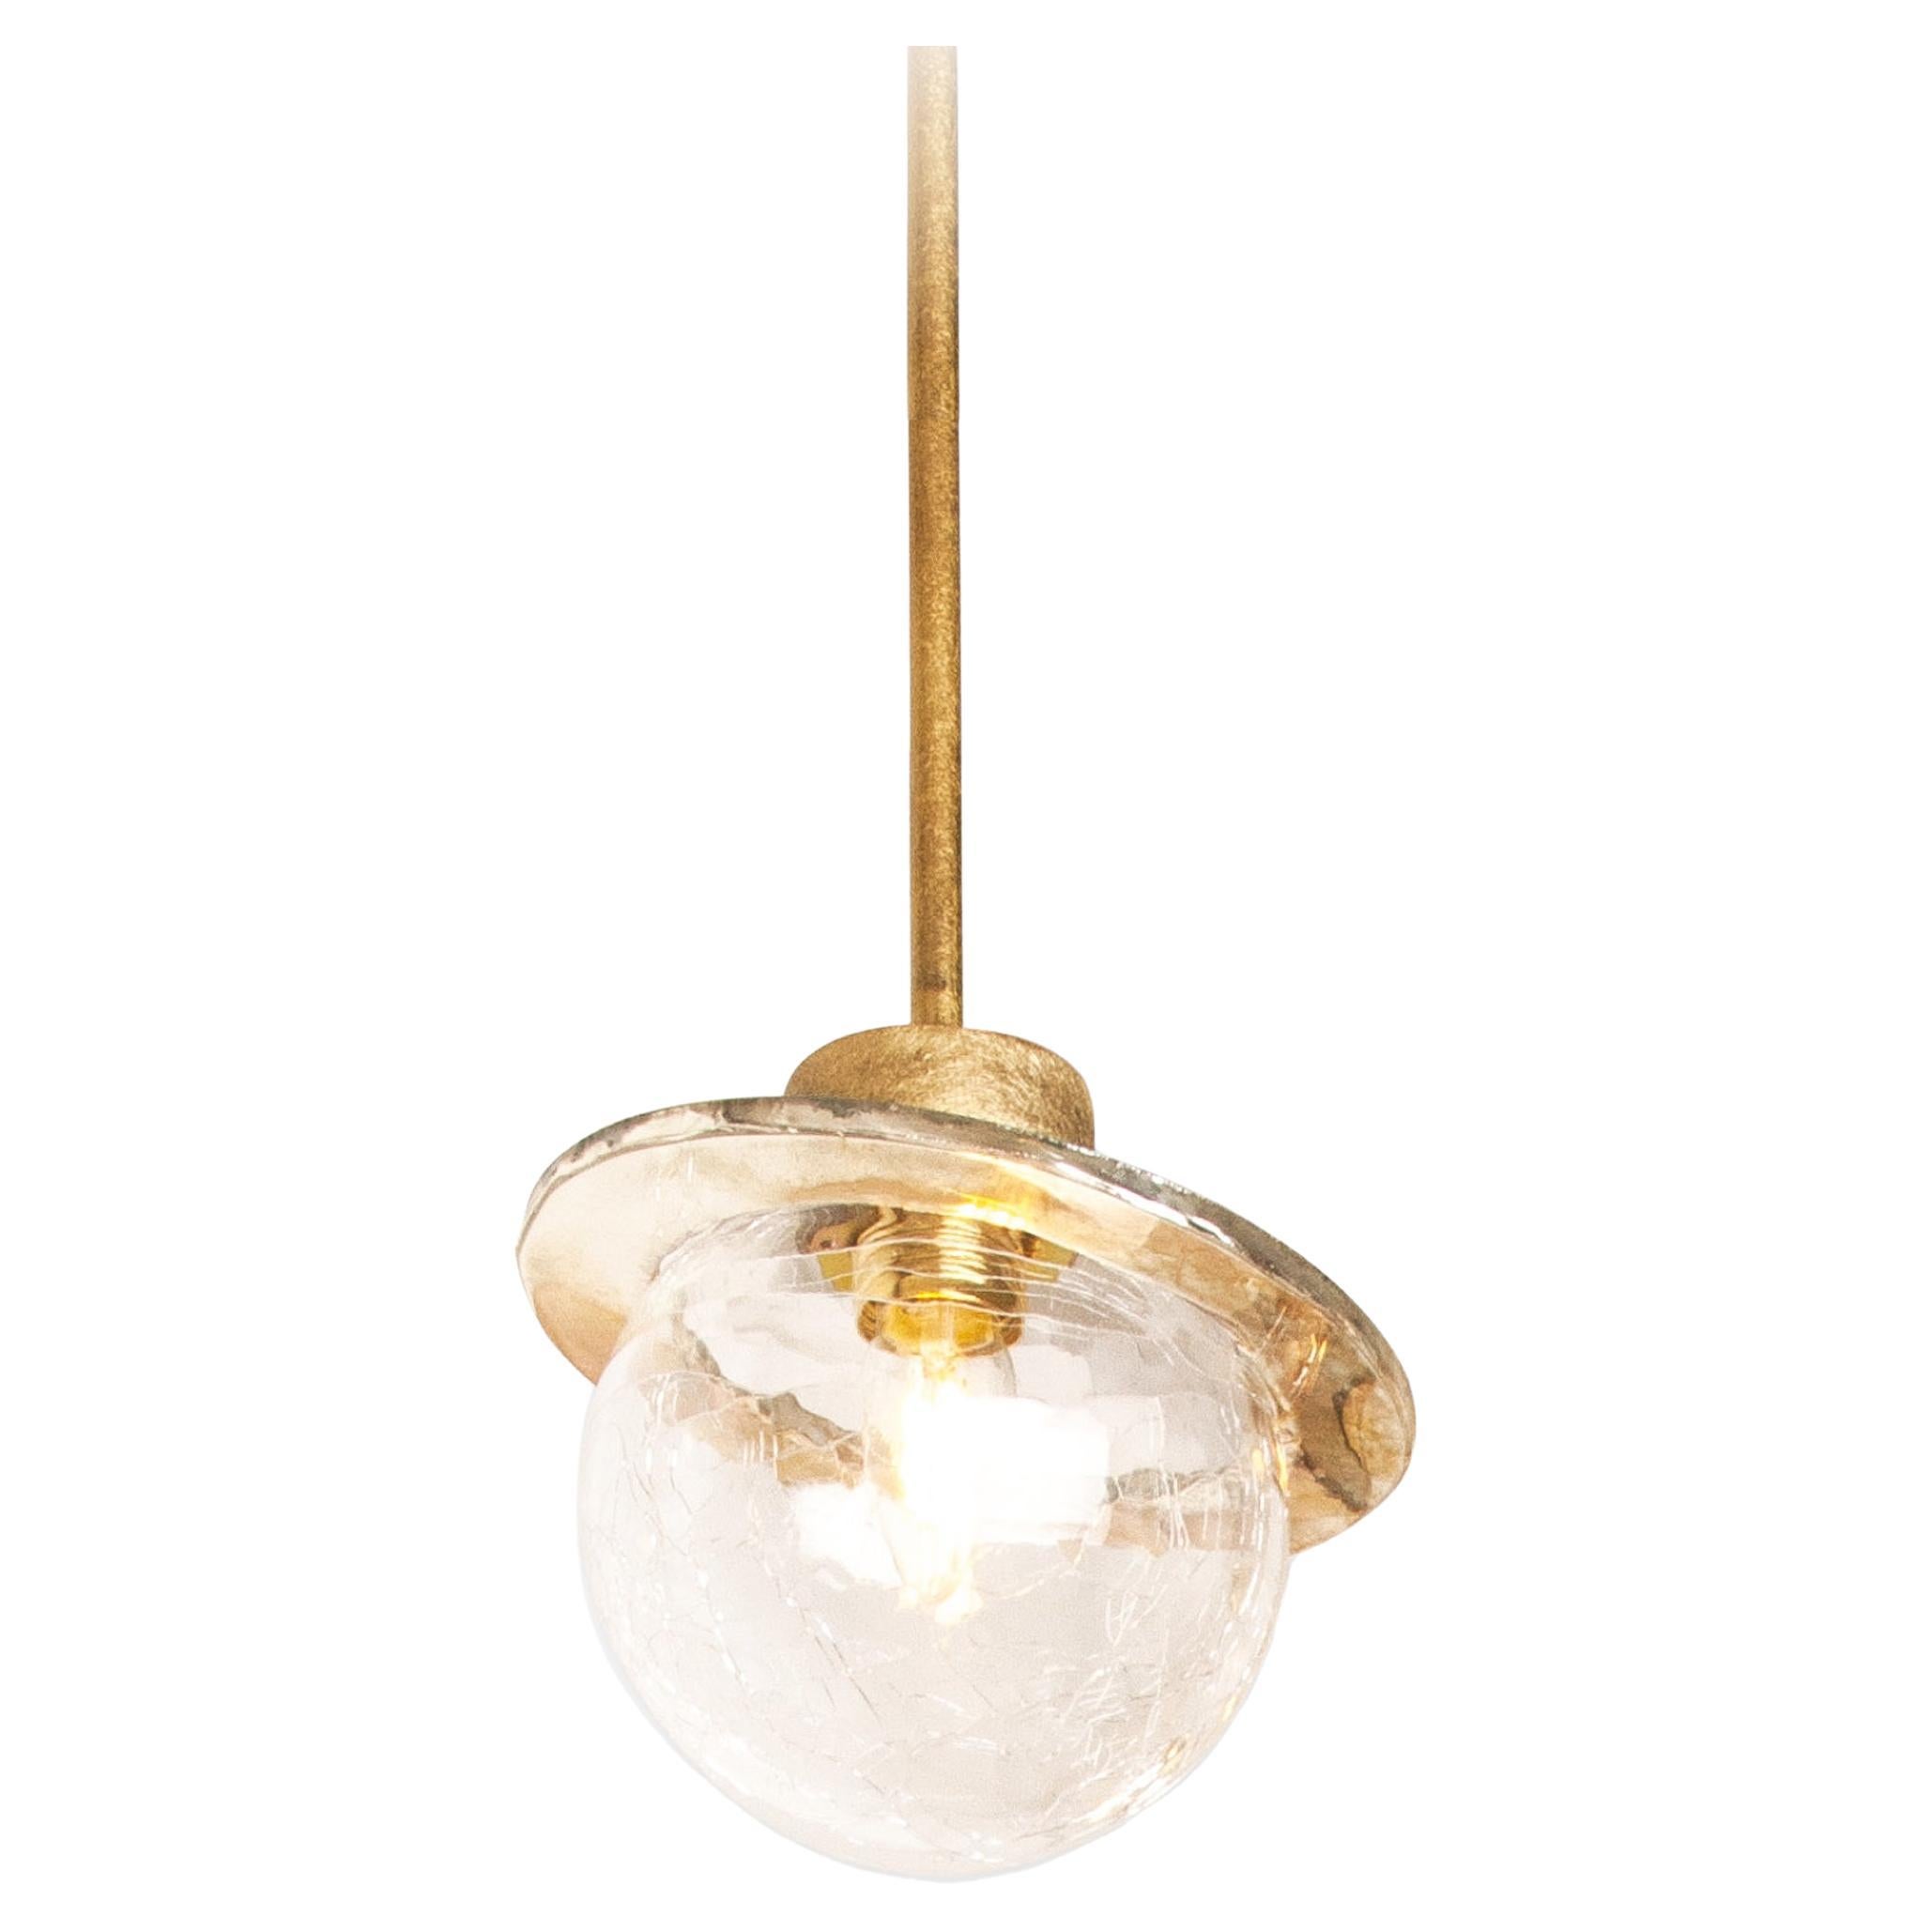 Lampe contemporaine Angel 22 en forme de bol en cristal, anneau en verre argenté coloré